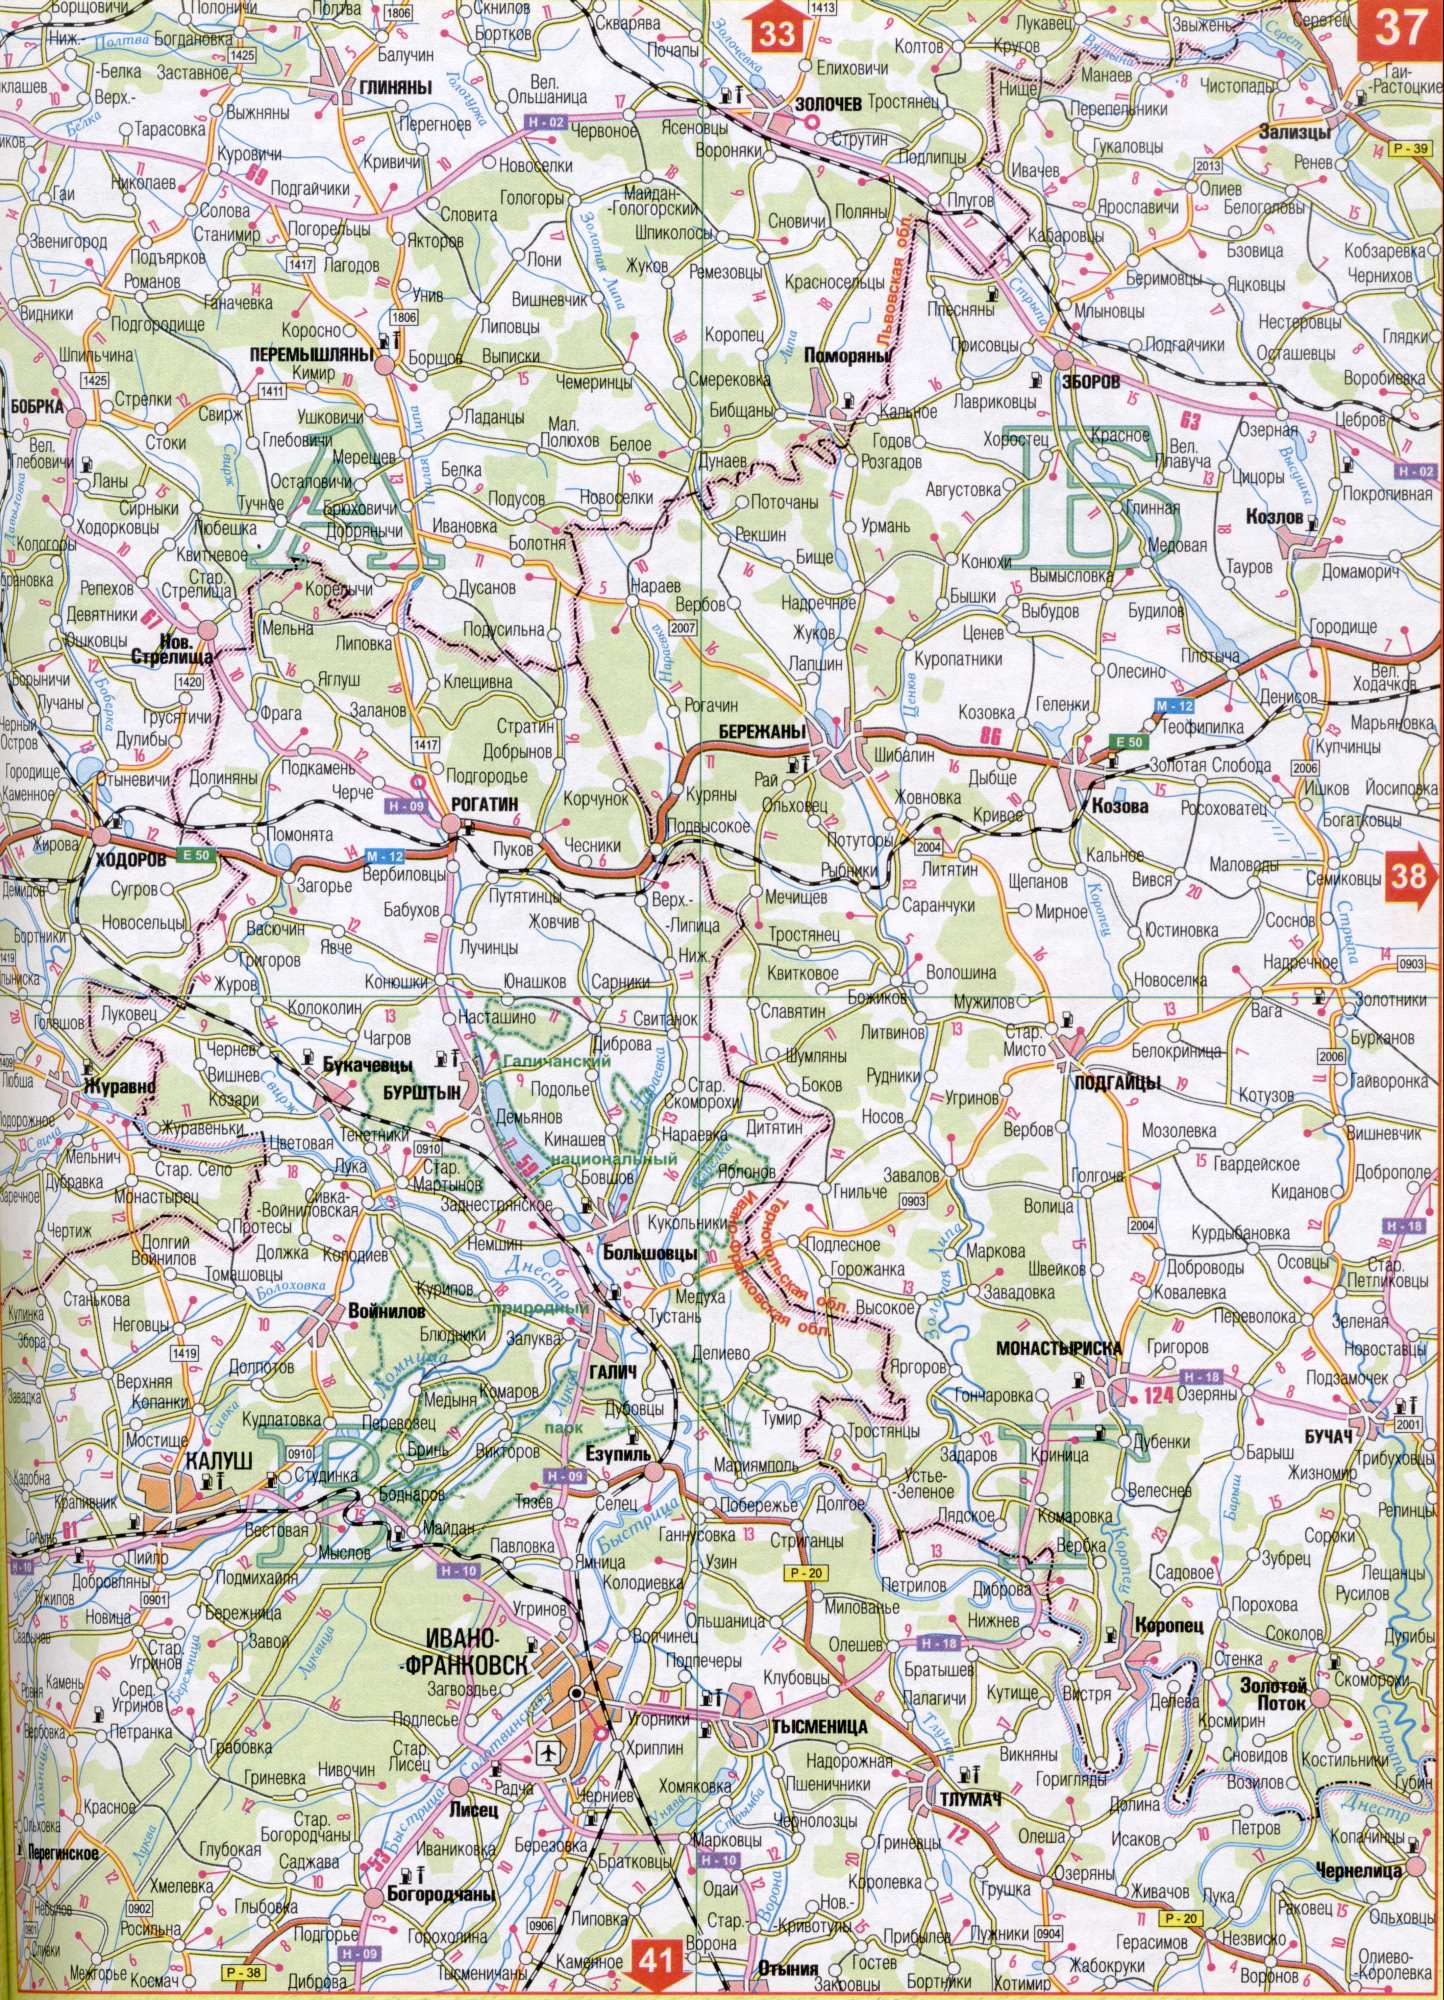 Carte de la région d'Ivano-Frankivsk de l'Ukraine. Télécharger une carte détaillée de l'automobile dorogreka Nistru